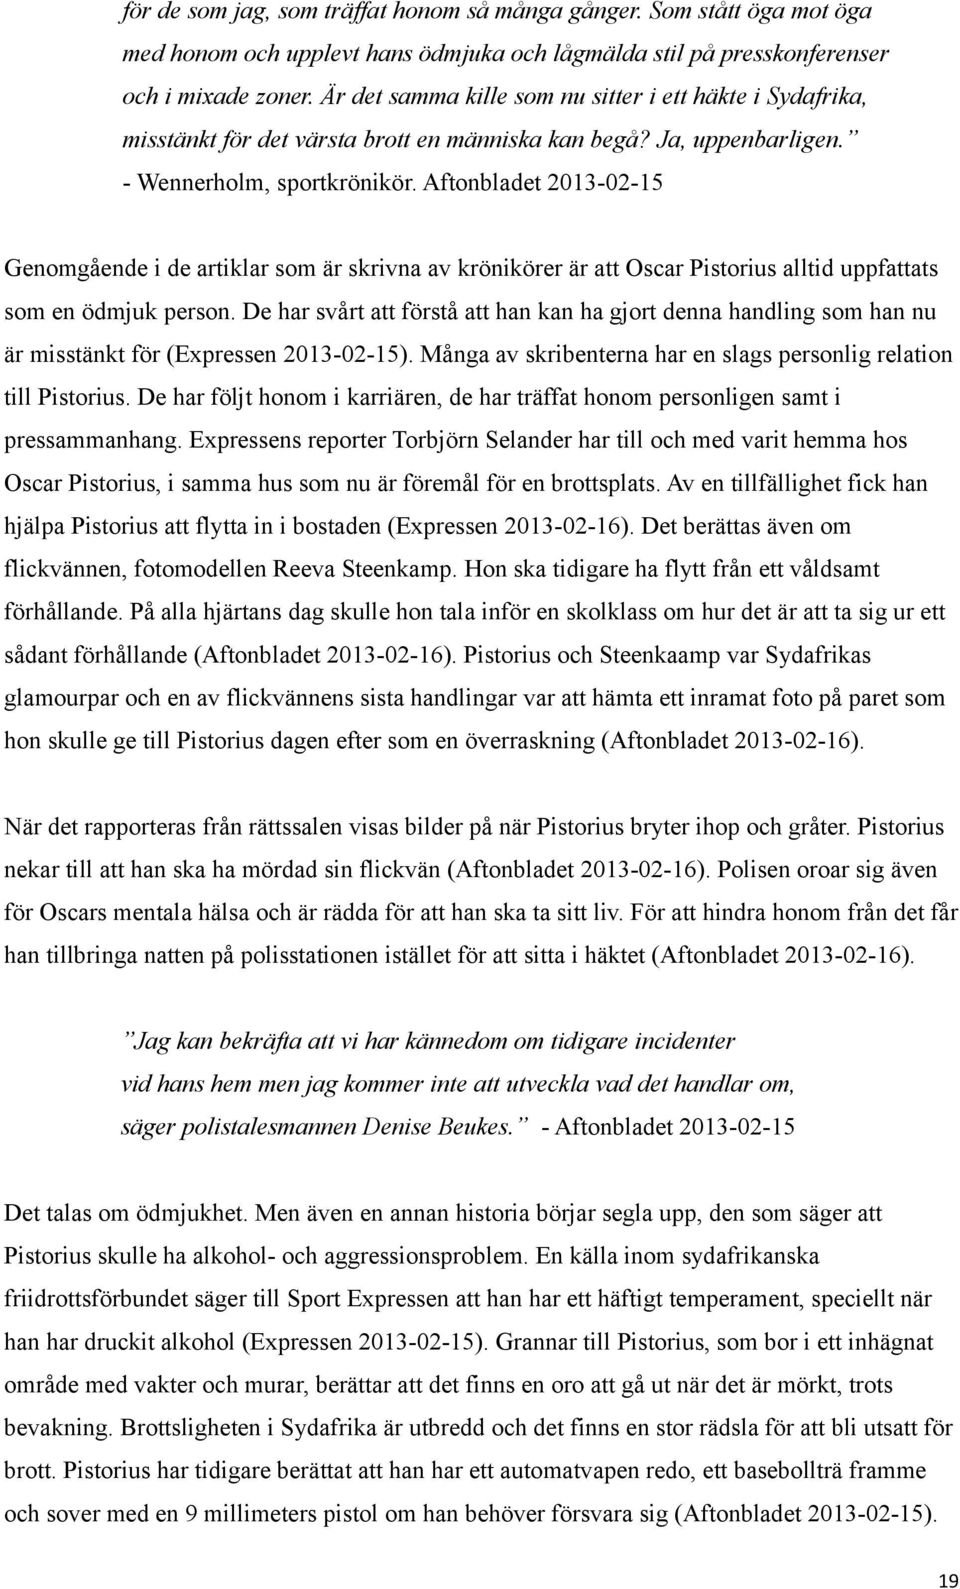 Aftonbladet 2013-02-15 Genomgående i de artiklar som är skrivna av krönikörer är att Oscar Pistorius alltid uppfattats som en ödmjuk person.